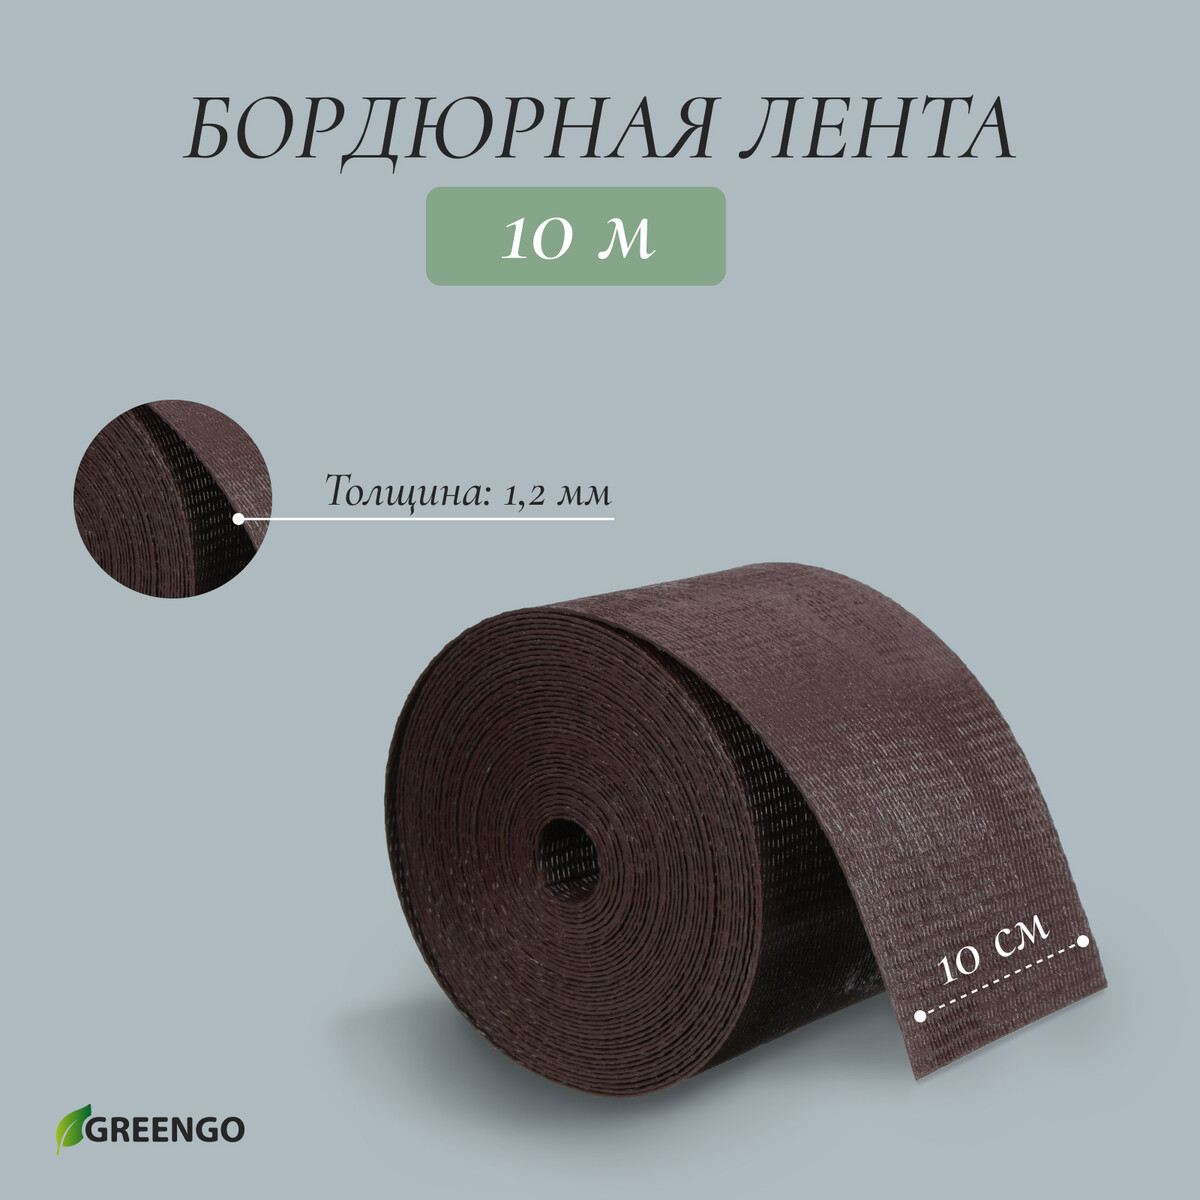 Лента бордюрная, 0.1 × 10 м, толщина 1.2 мм, пластиковая, коричневая, greengo